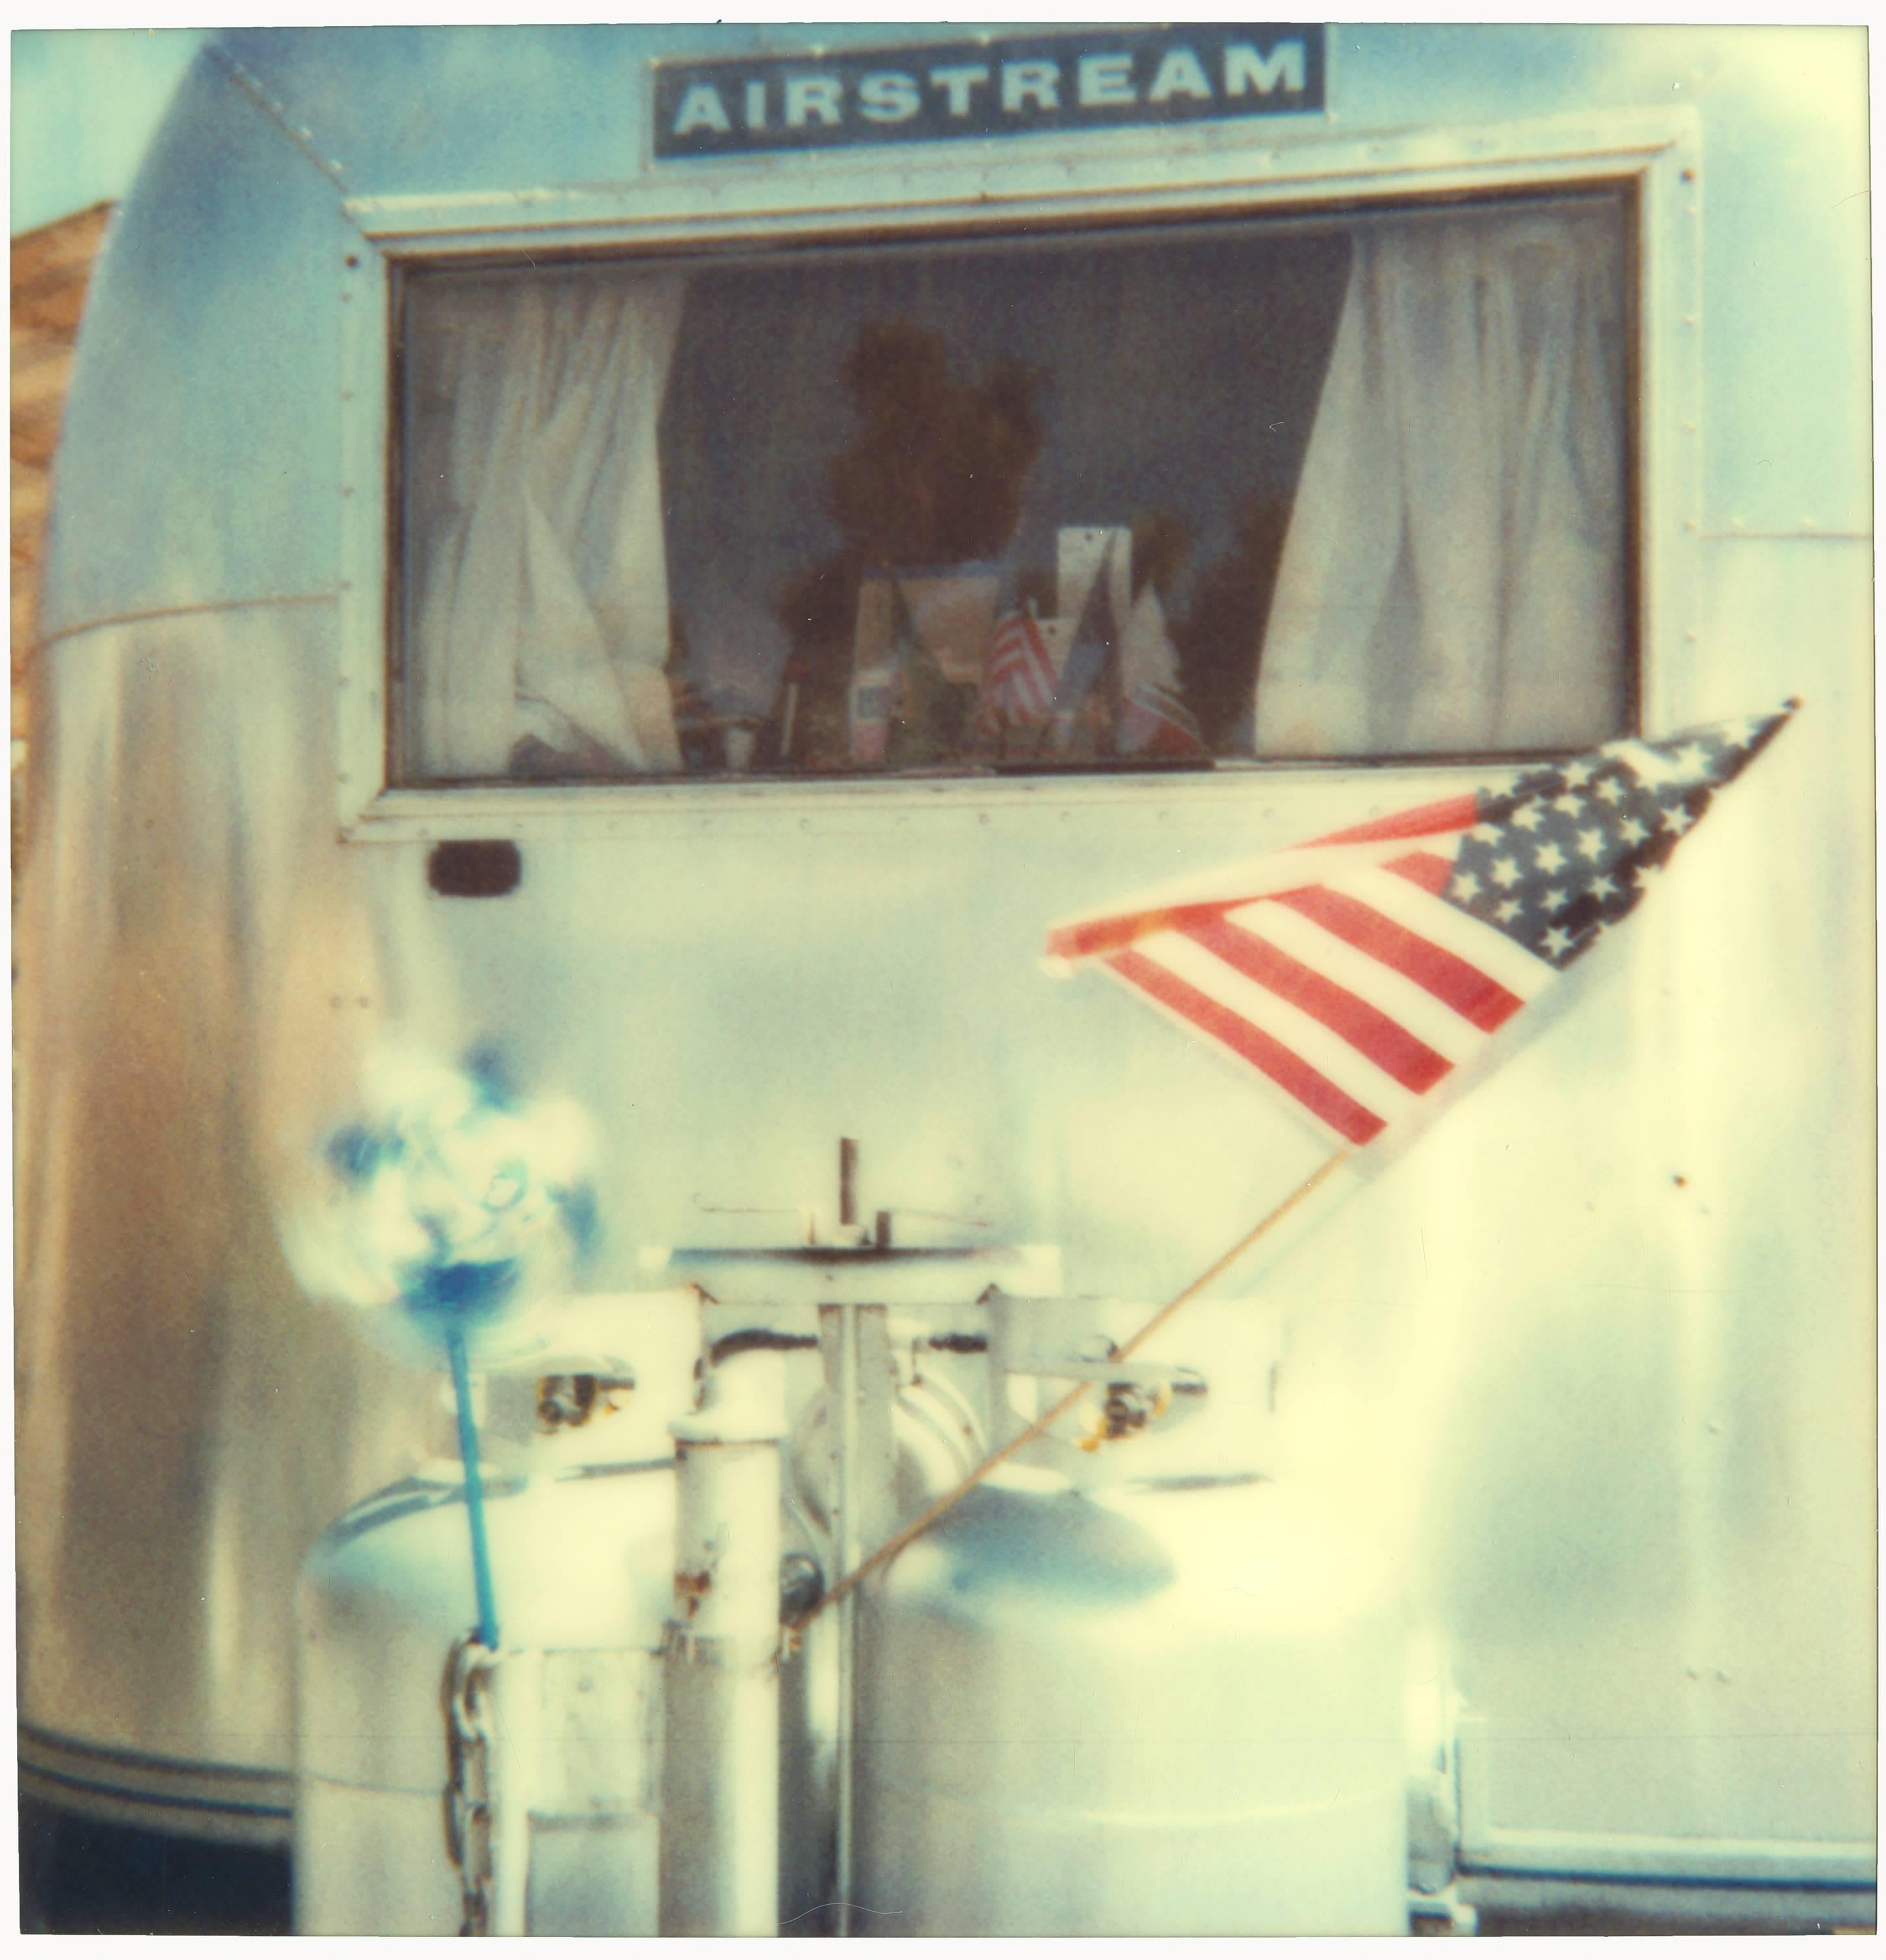 Stefanie Schneider Color Photograph – Airstream (29 Palms, Kalifornien) – 58x56cm, analog, Polaroid, zeitgenössisch, 20. Jahrhundert